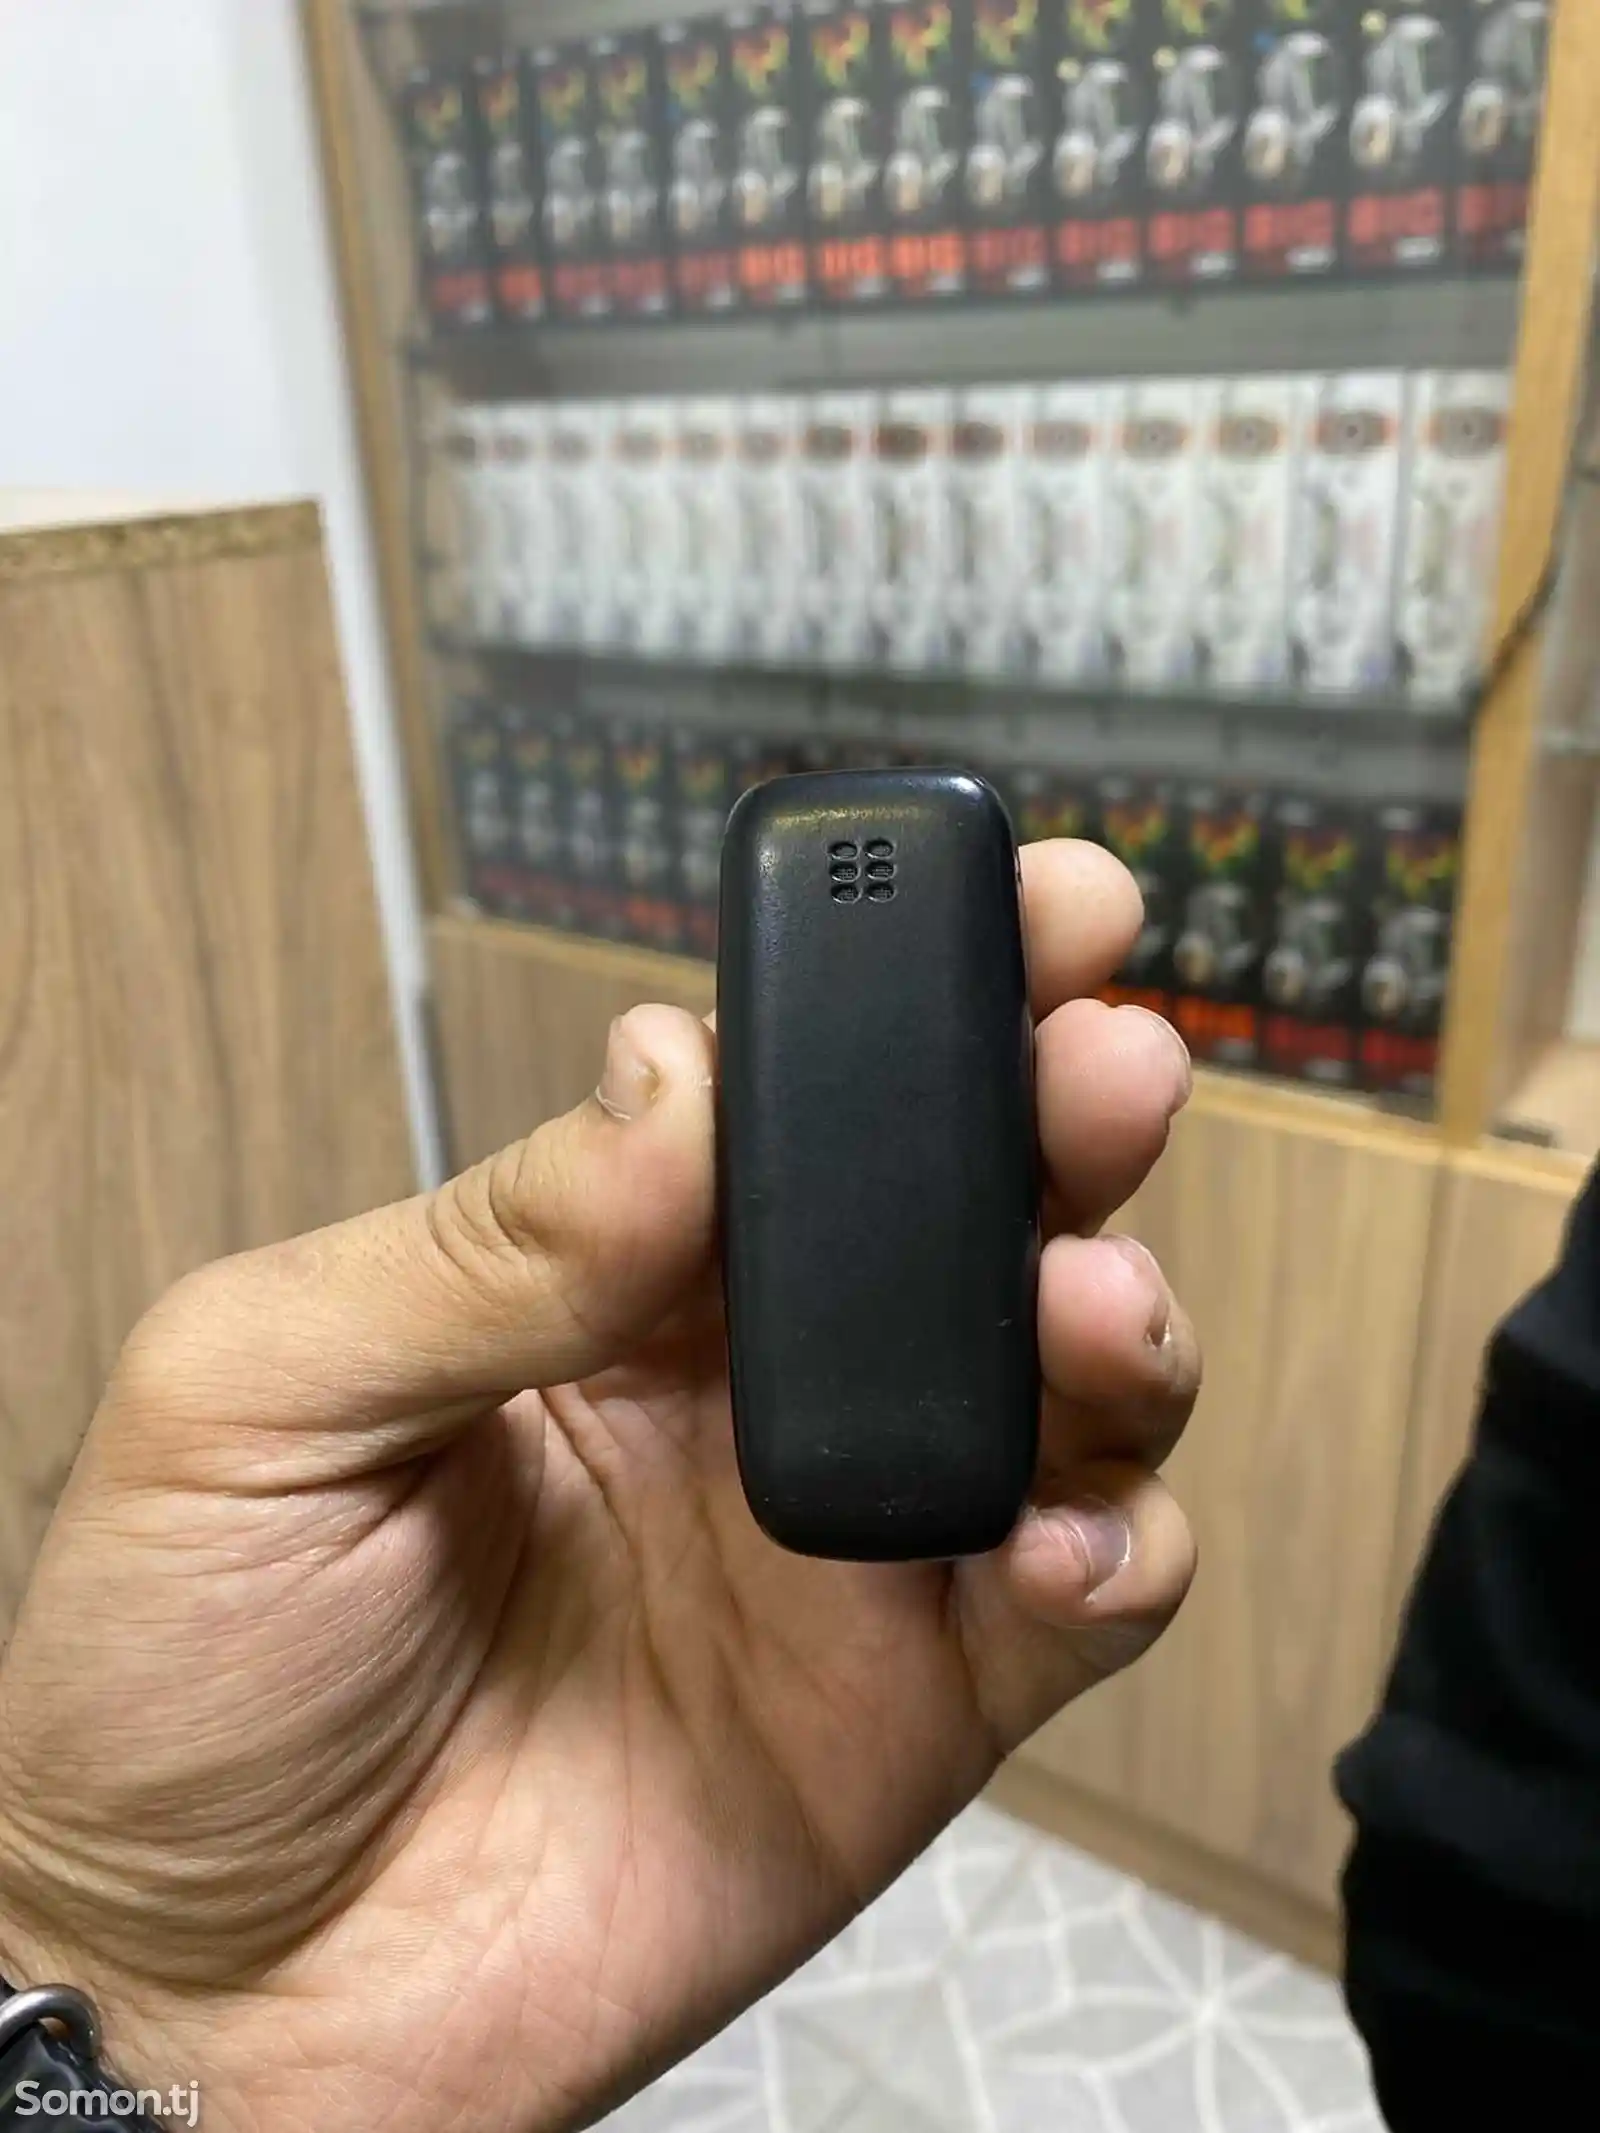 Nokia mini-2